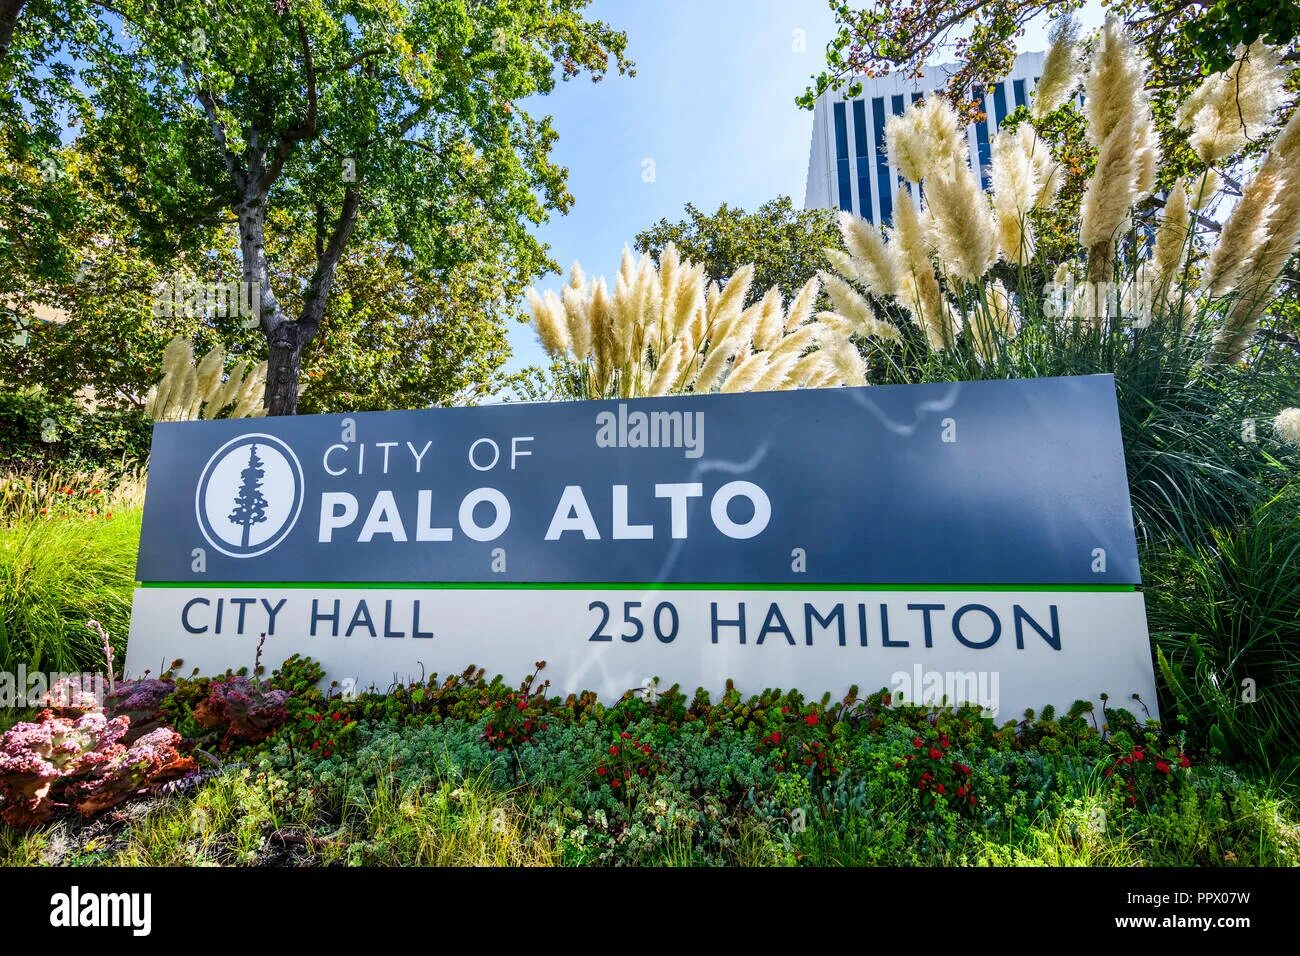 Табличка пала. Palo Alto City. Пало-Альто город в США. Города вокруг Пало Альто. City logo Palo Alto California.